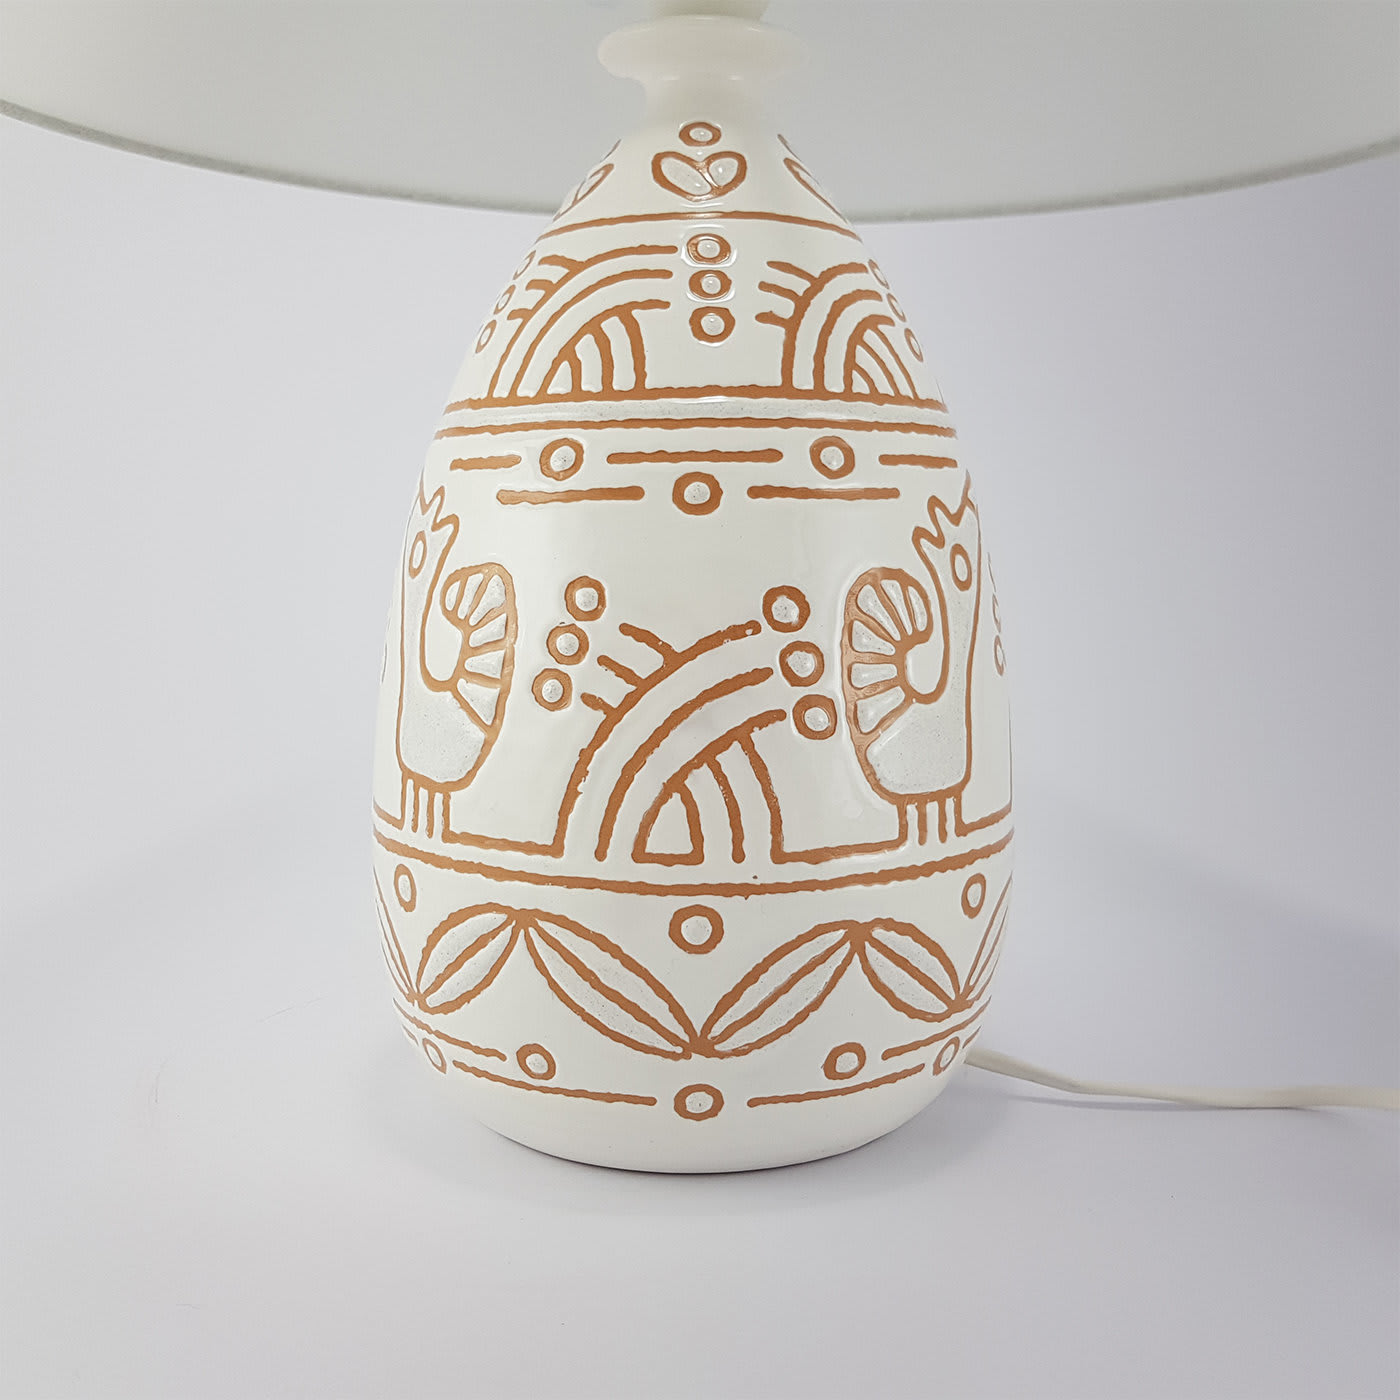 Maiolica Table Lamp - Ceramiche Santalucia